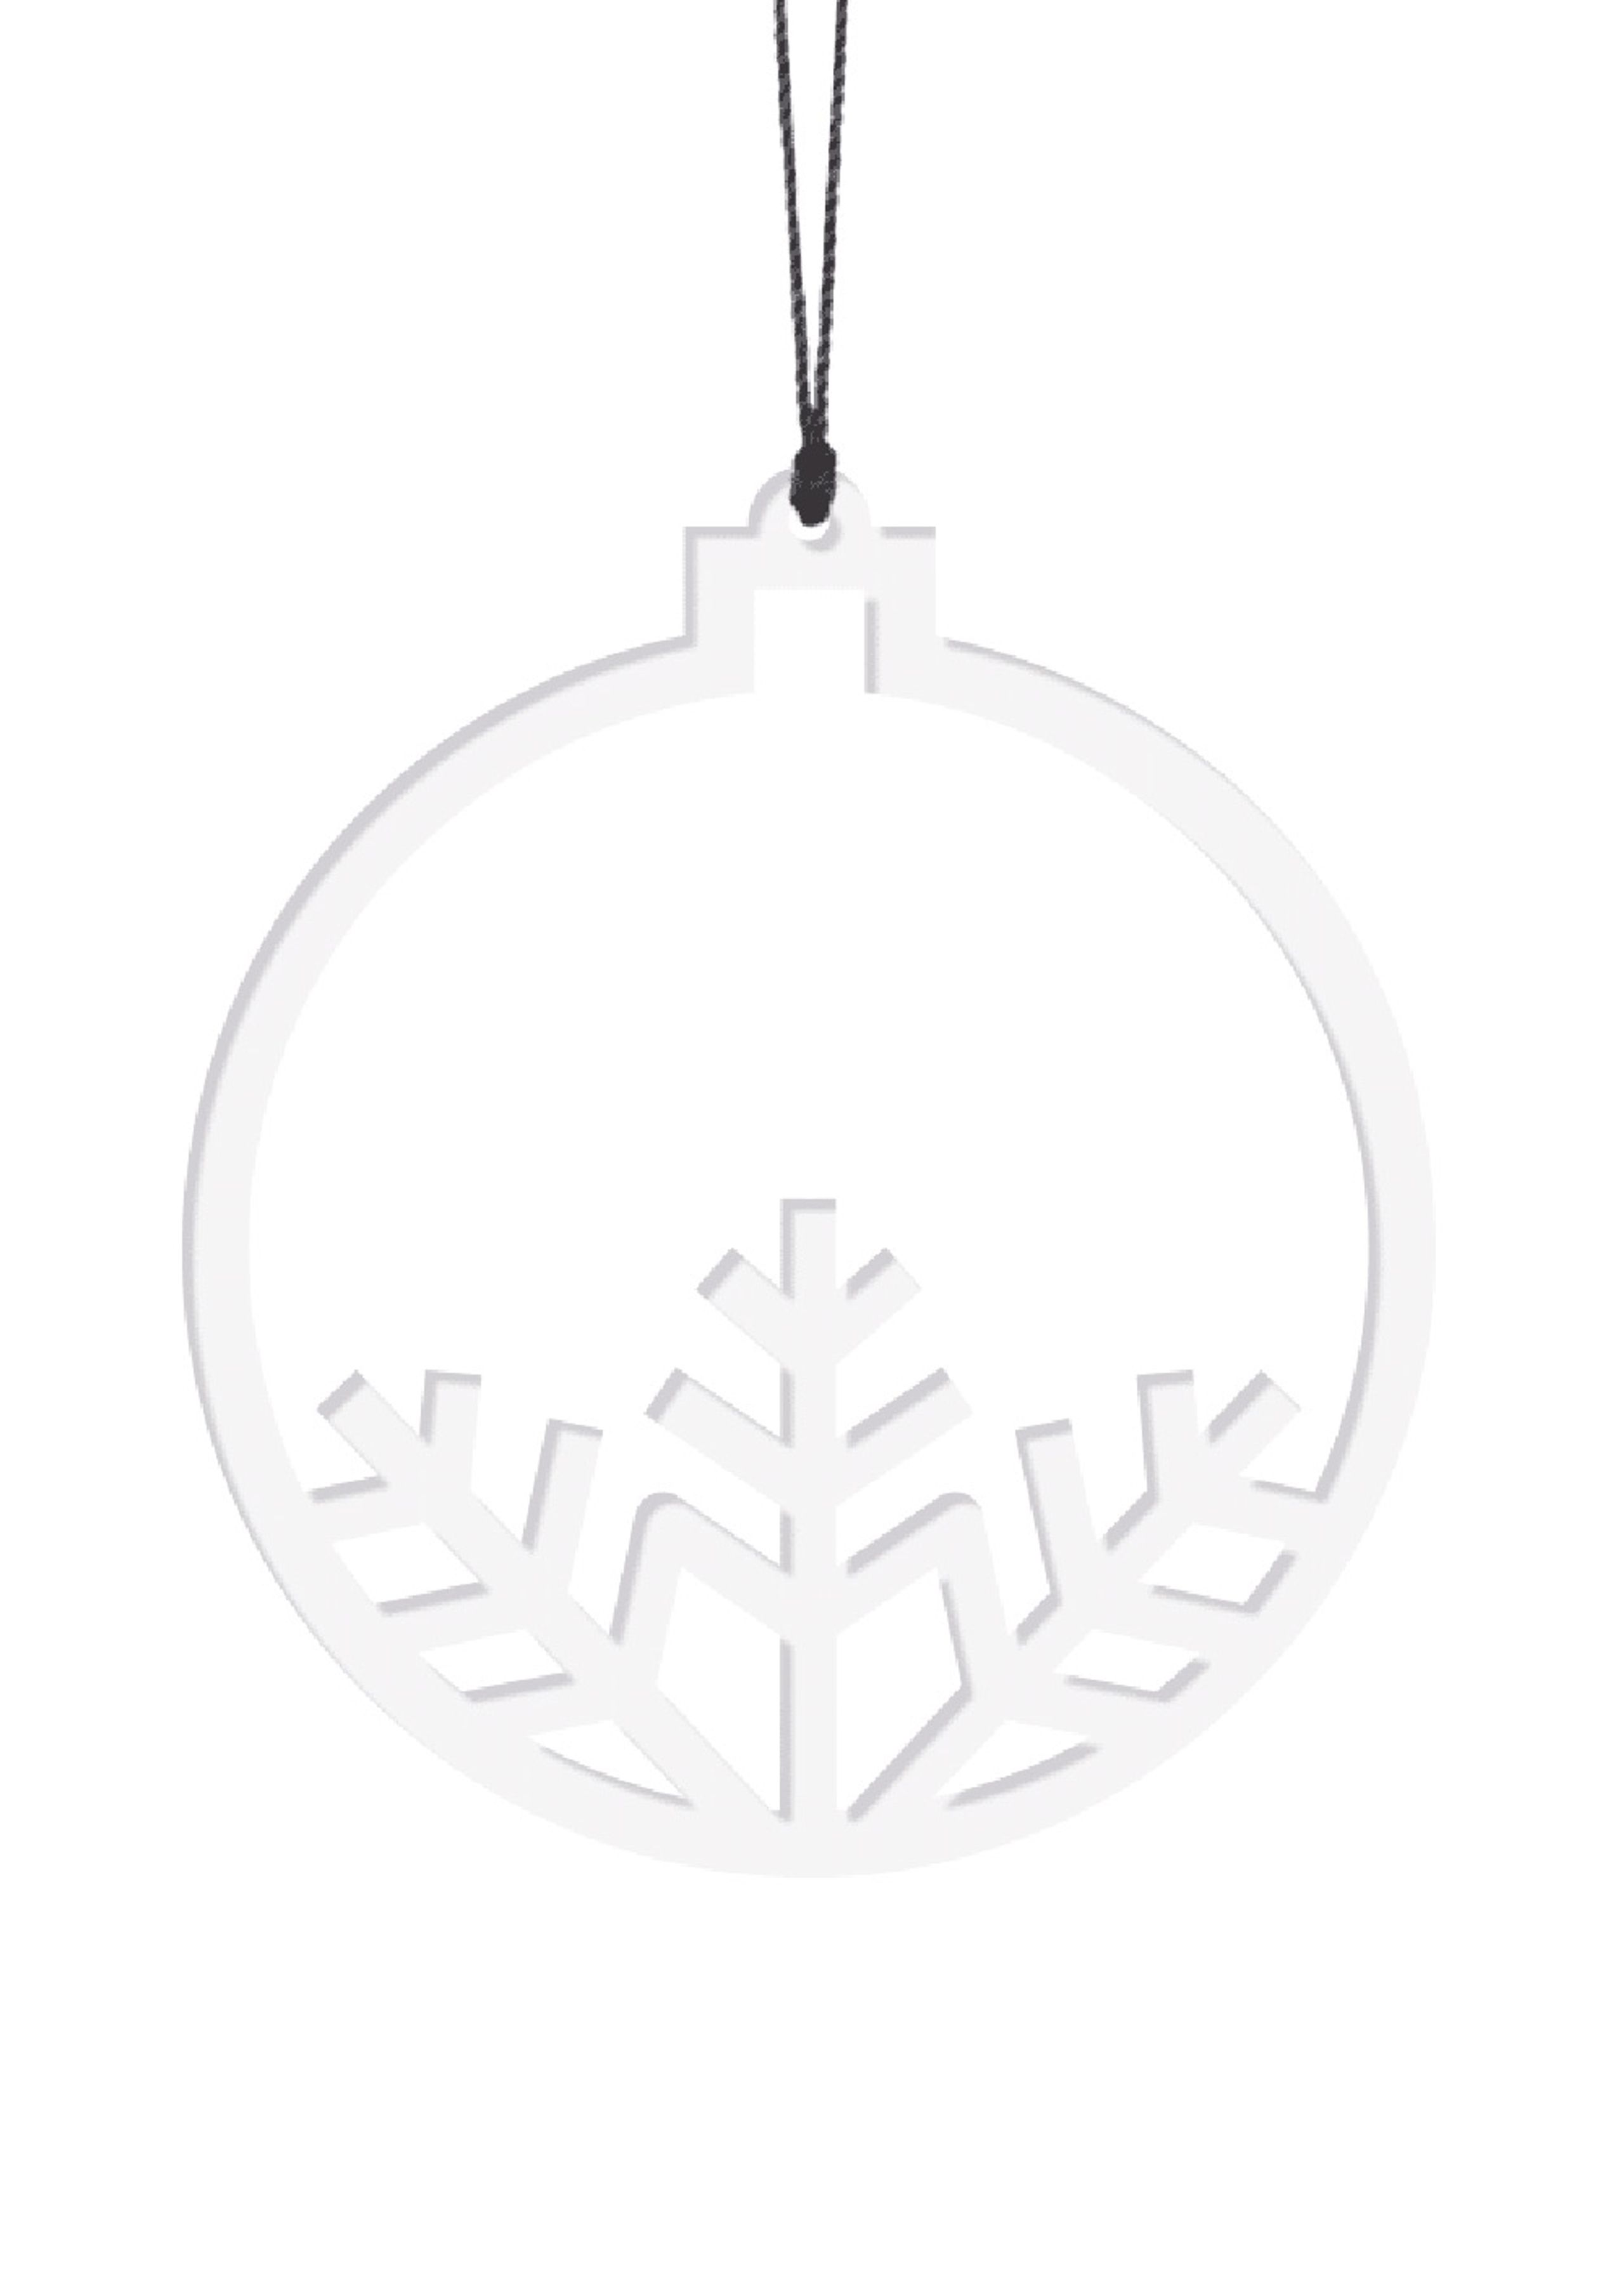 FELIUS Design - Decorações - Christmasball w/ Snowflake - White